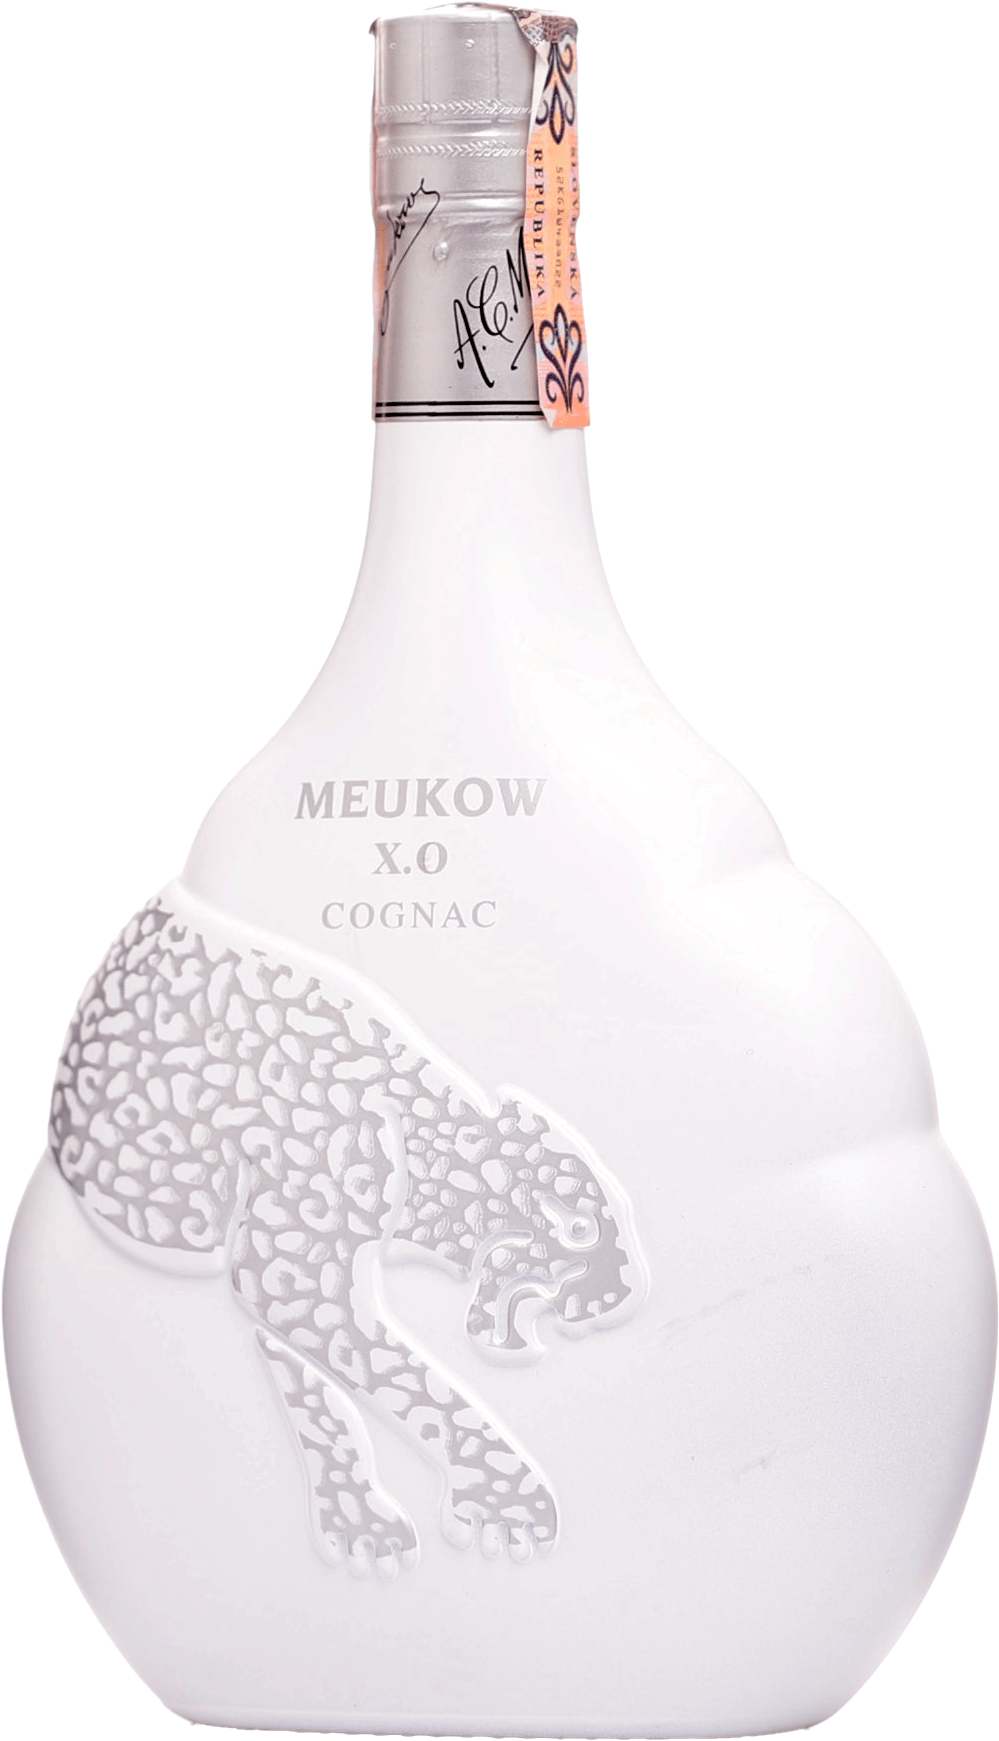 Meukow XO Ice 40% 0,7l